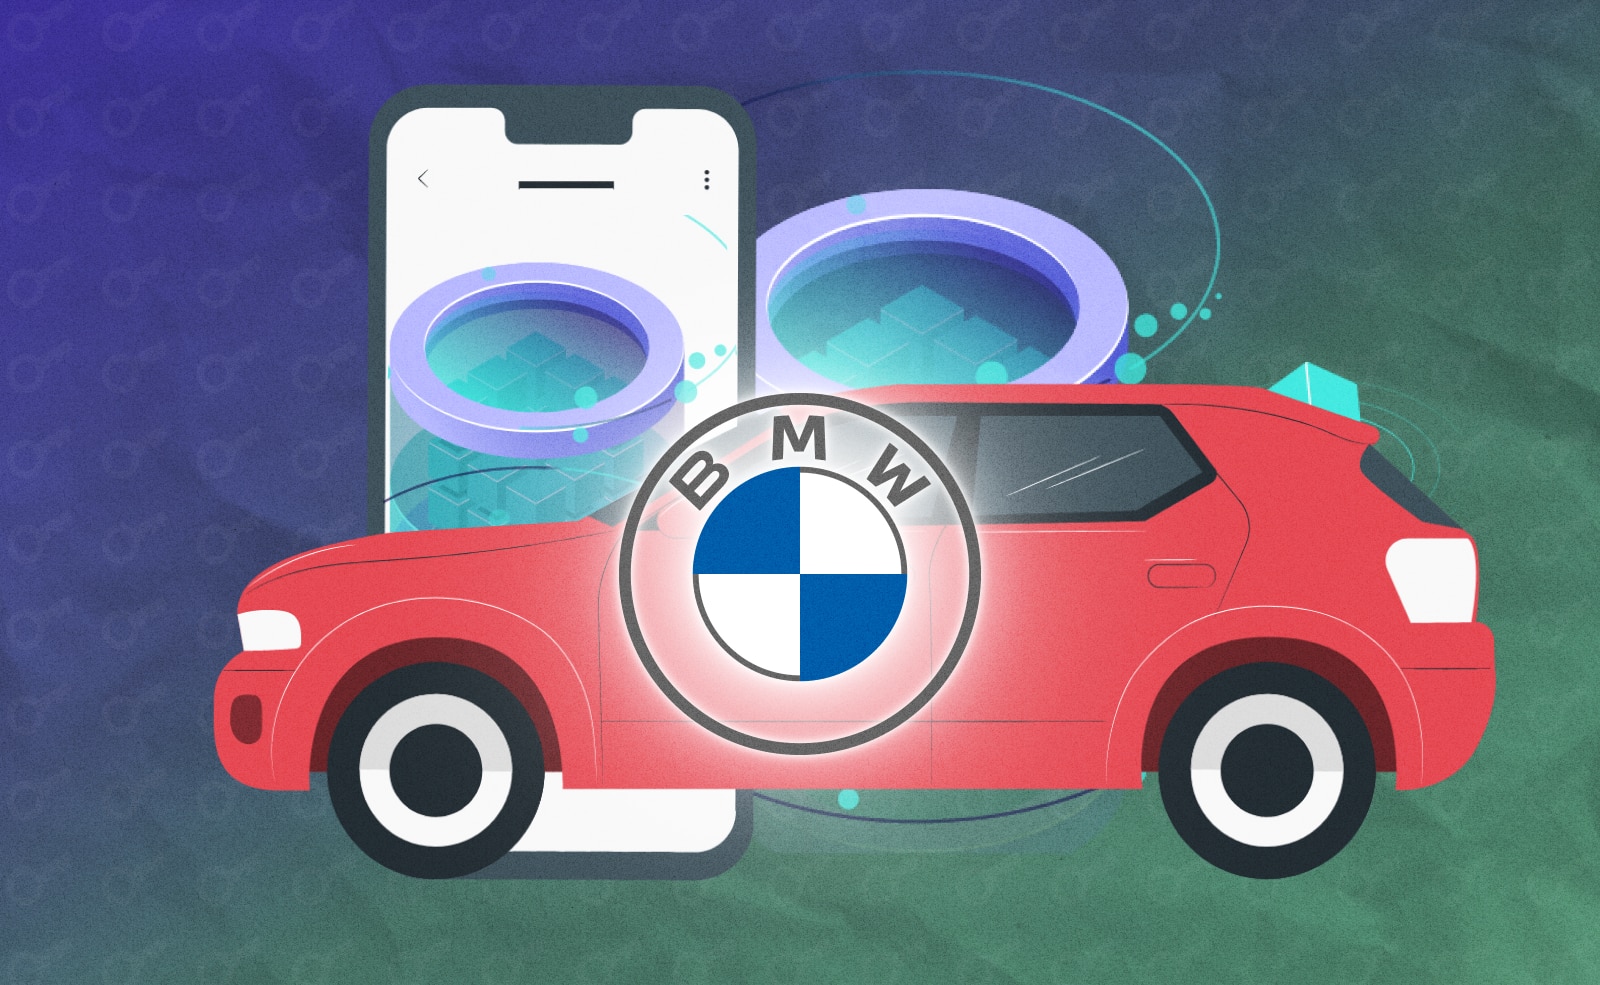 BMW - Один из крупнейших производителей автомобилей в мире внедрит технологию блокчейн.